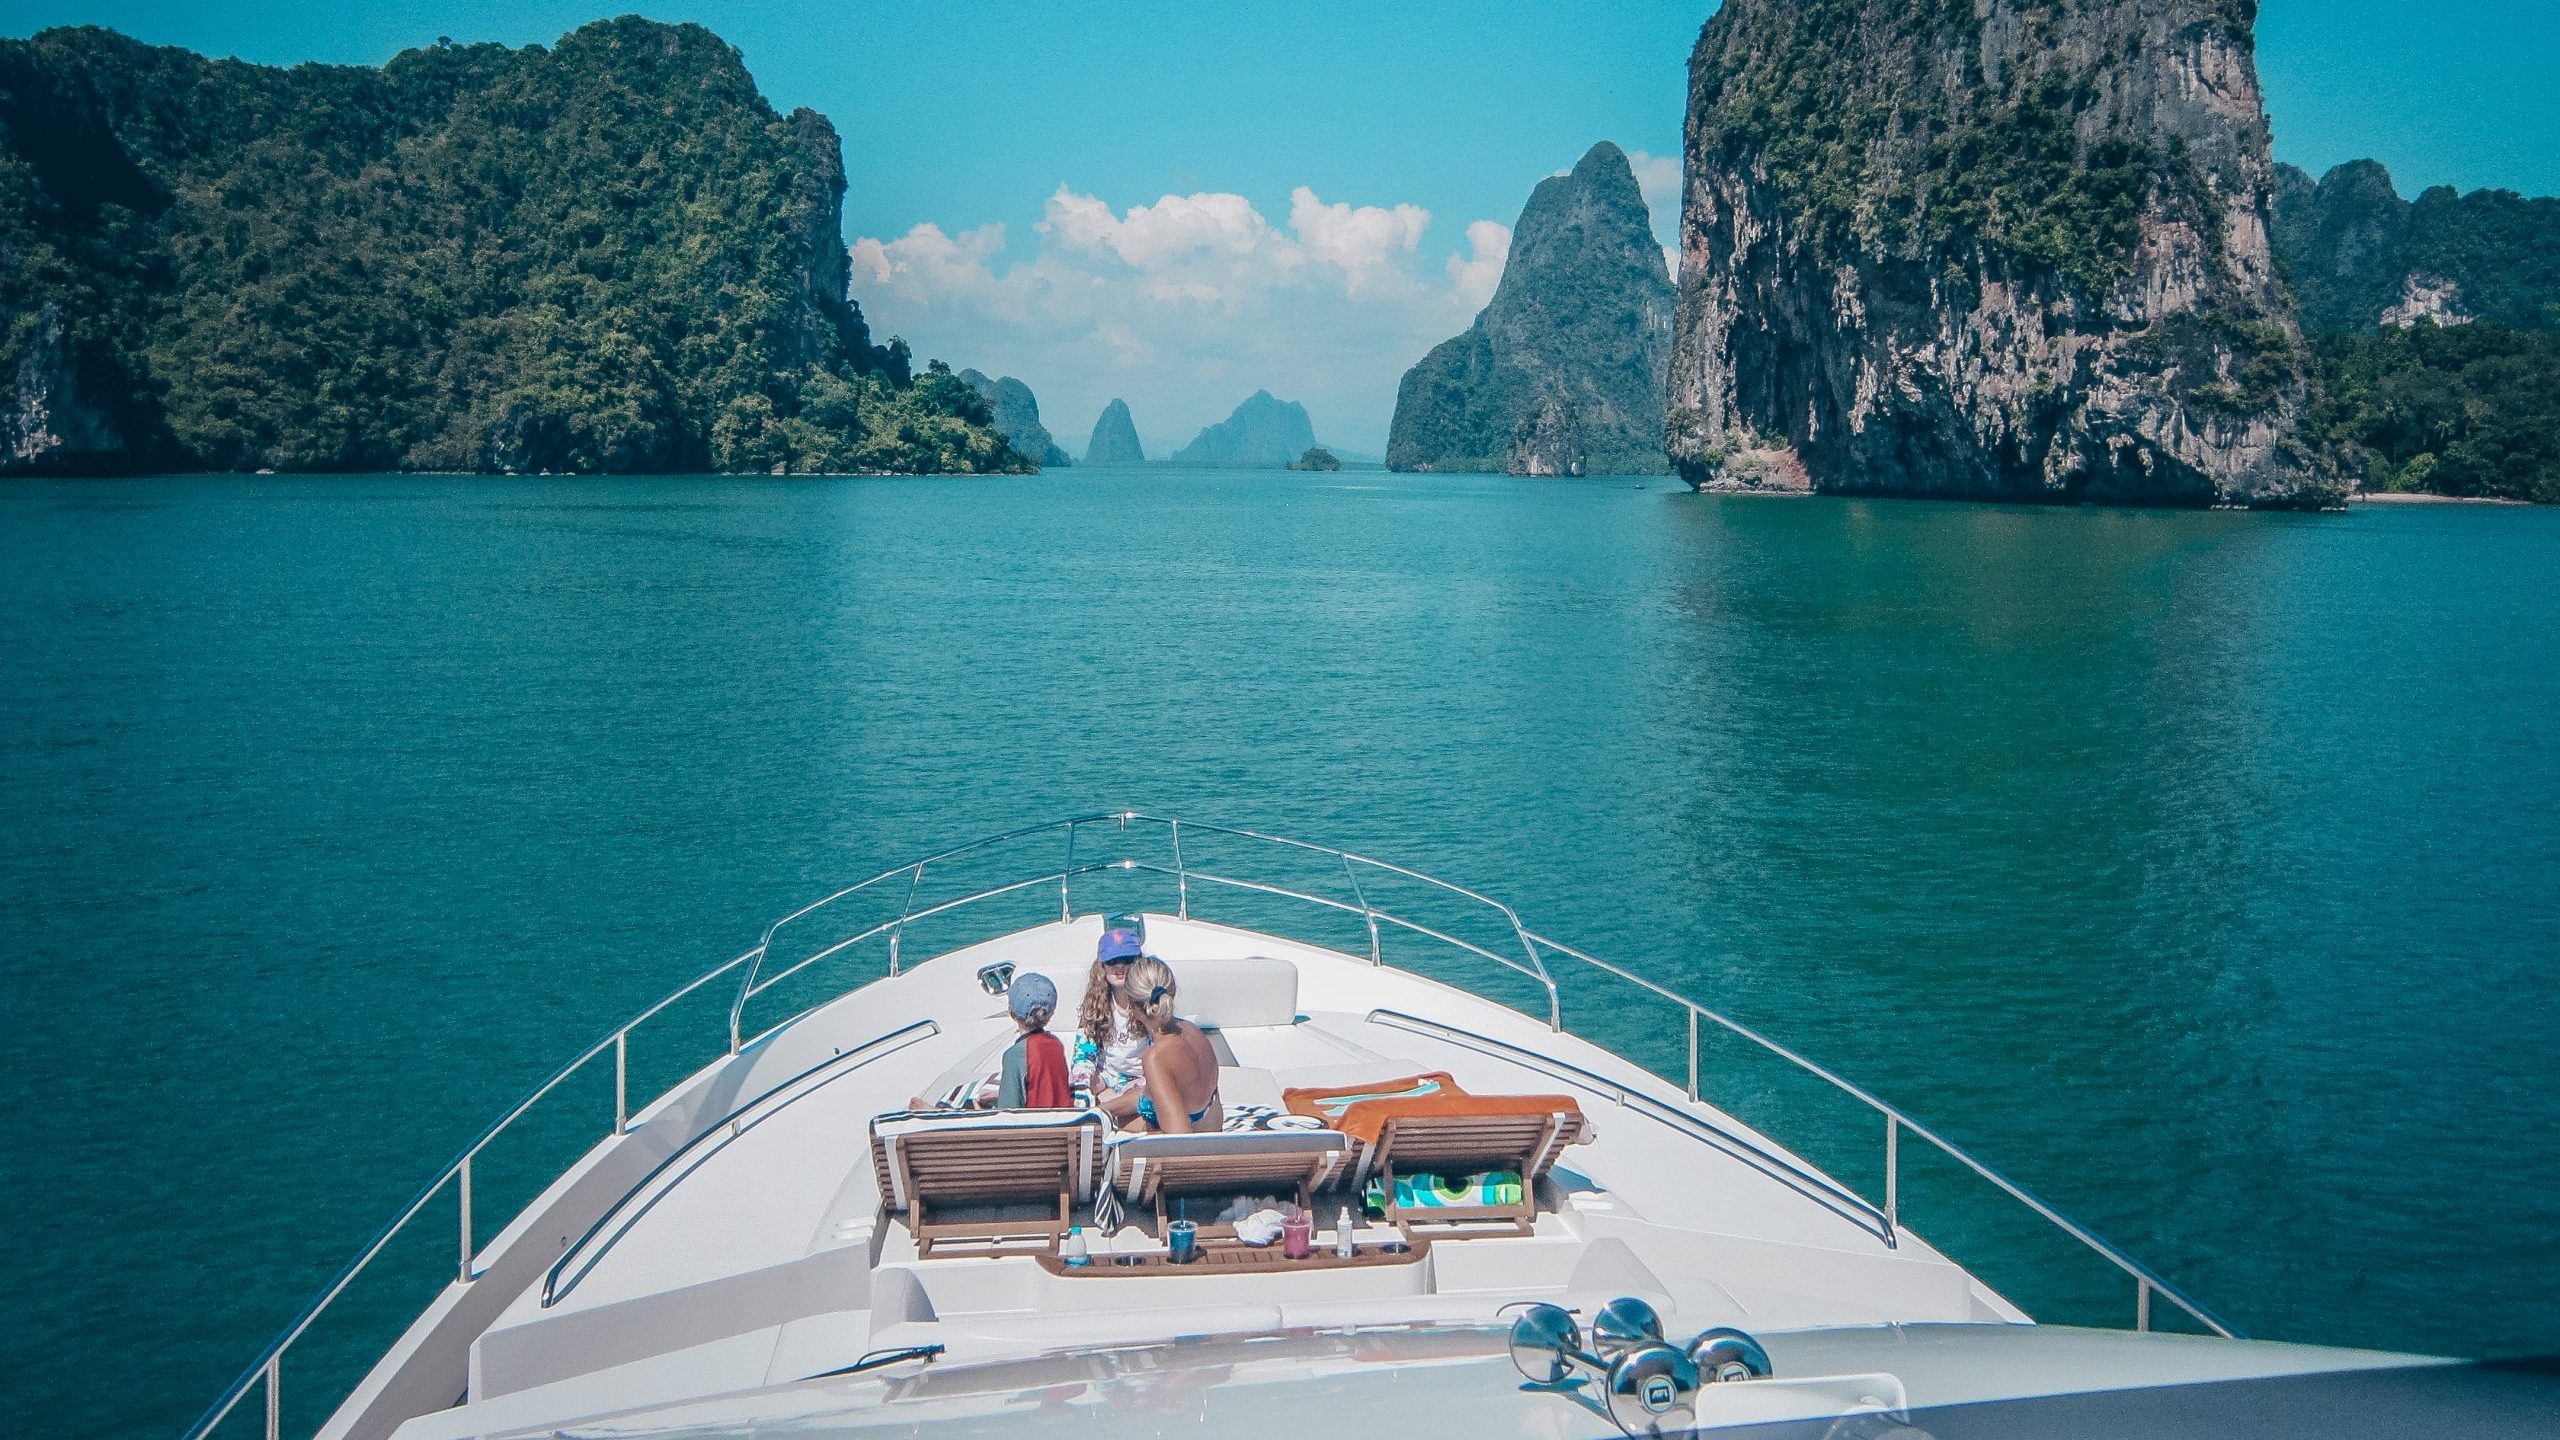 yacht master phuket thailand